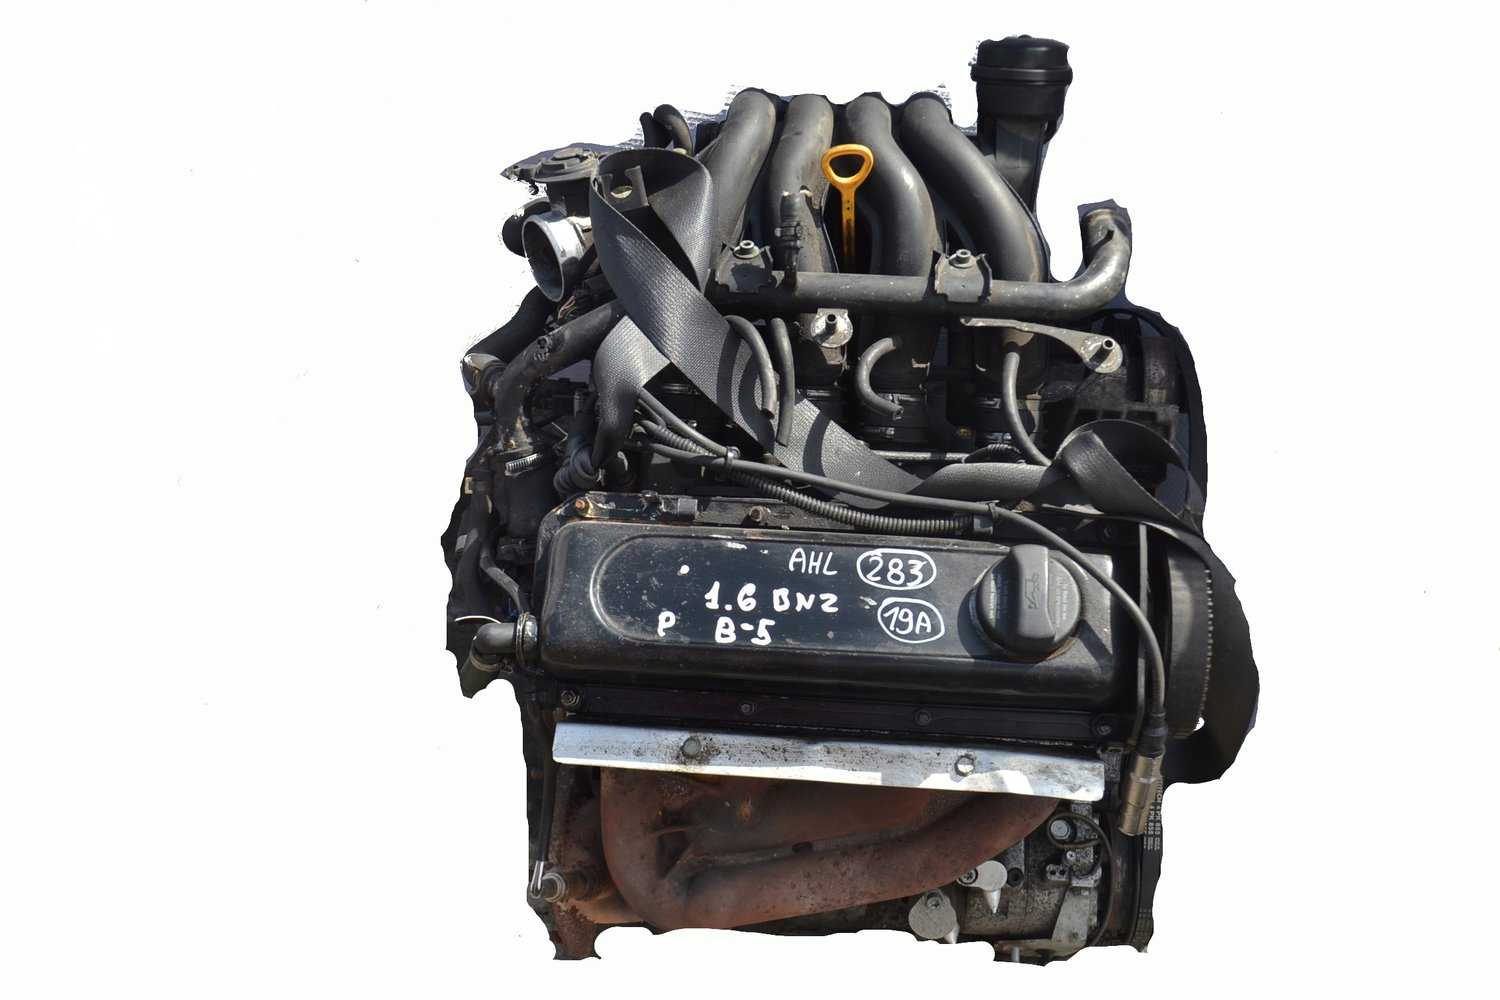 Мотор ABF расширил линейку двигателей, применяемых на автомобилях концерна Volkswagen AG Силовая установка имеет высокие динамические показатели и хорошую надежность